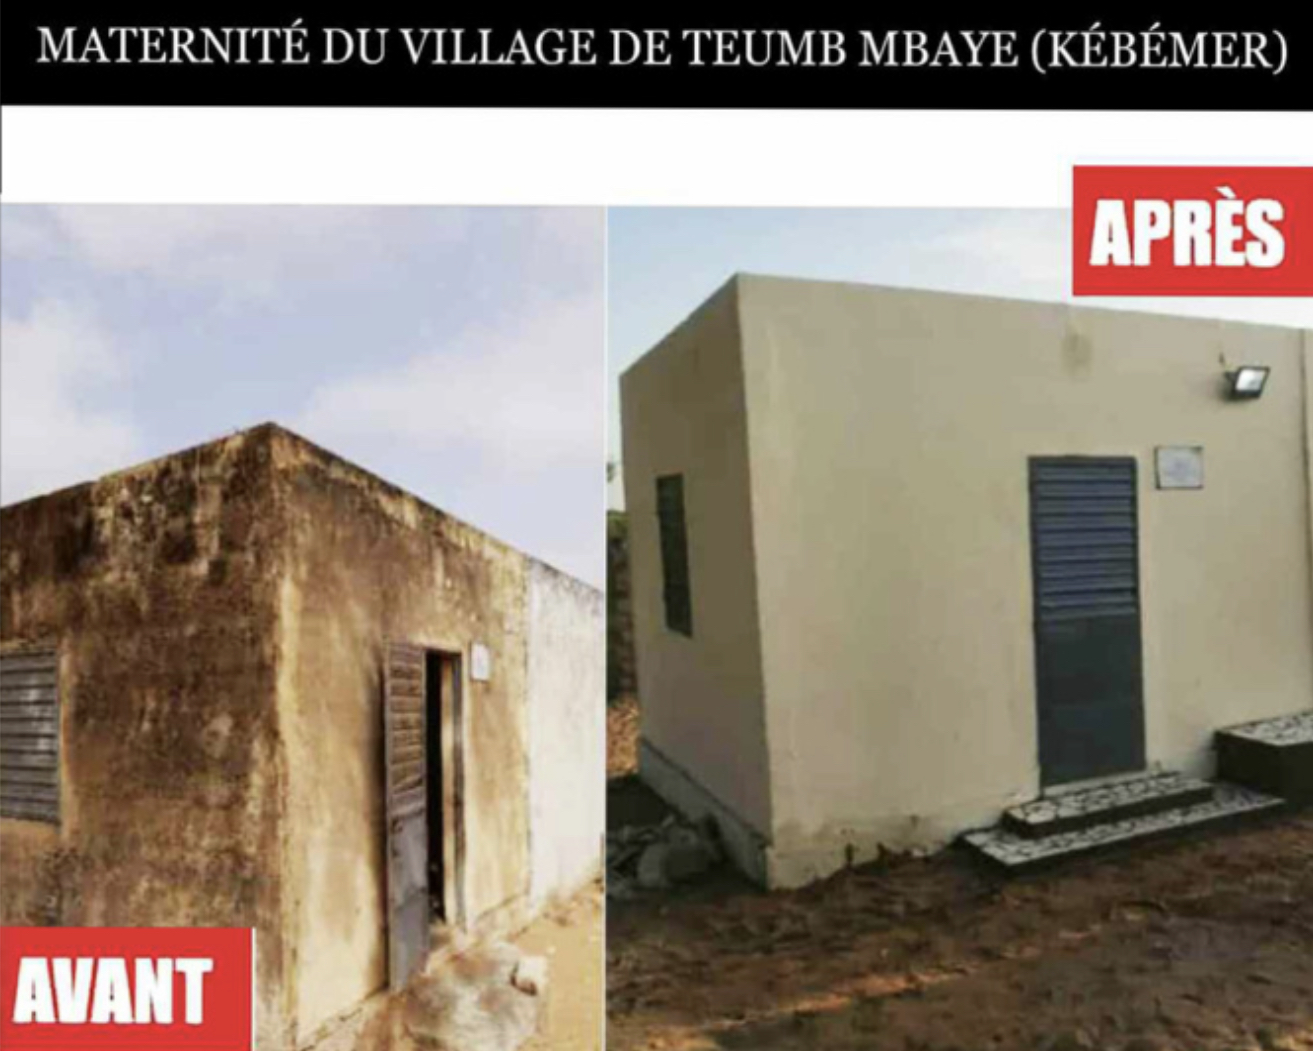 Localité privée de maternité depuis 1982 : Bougane Guèye Dany soulage le village de Teumb Mbaye à Kebemer !